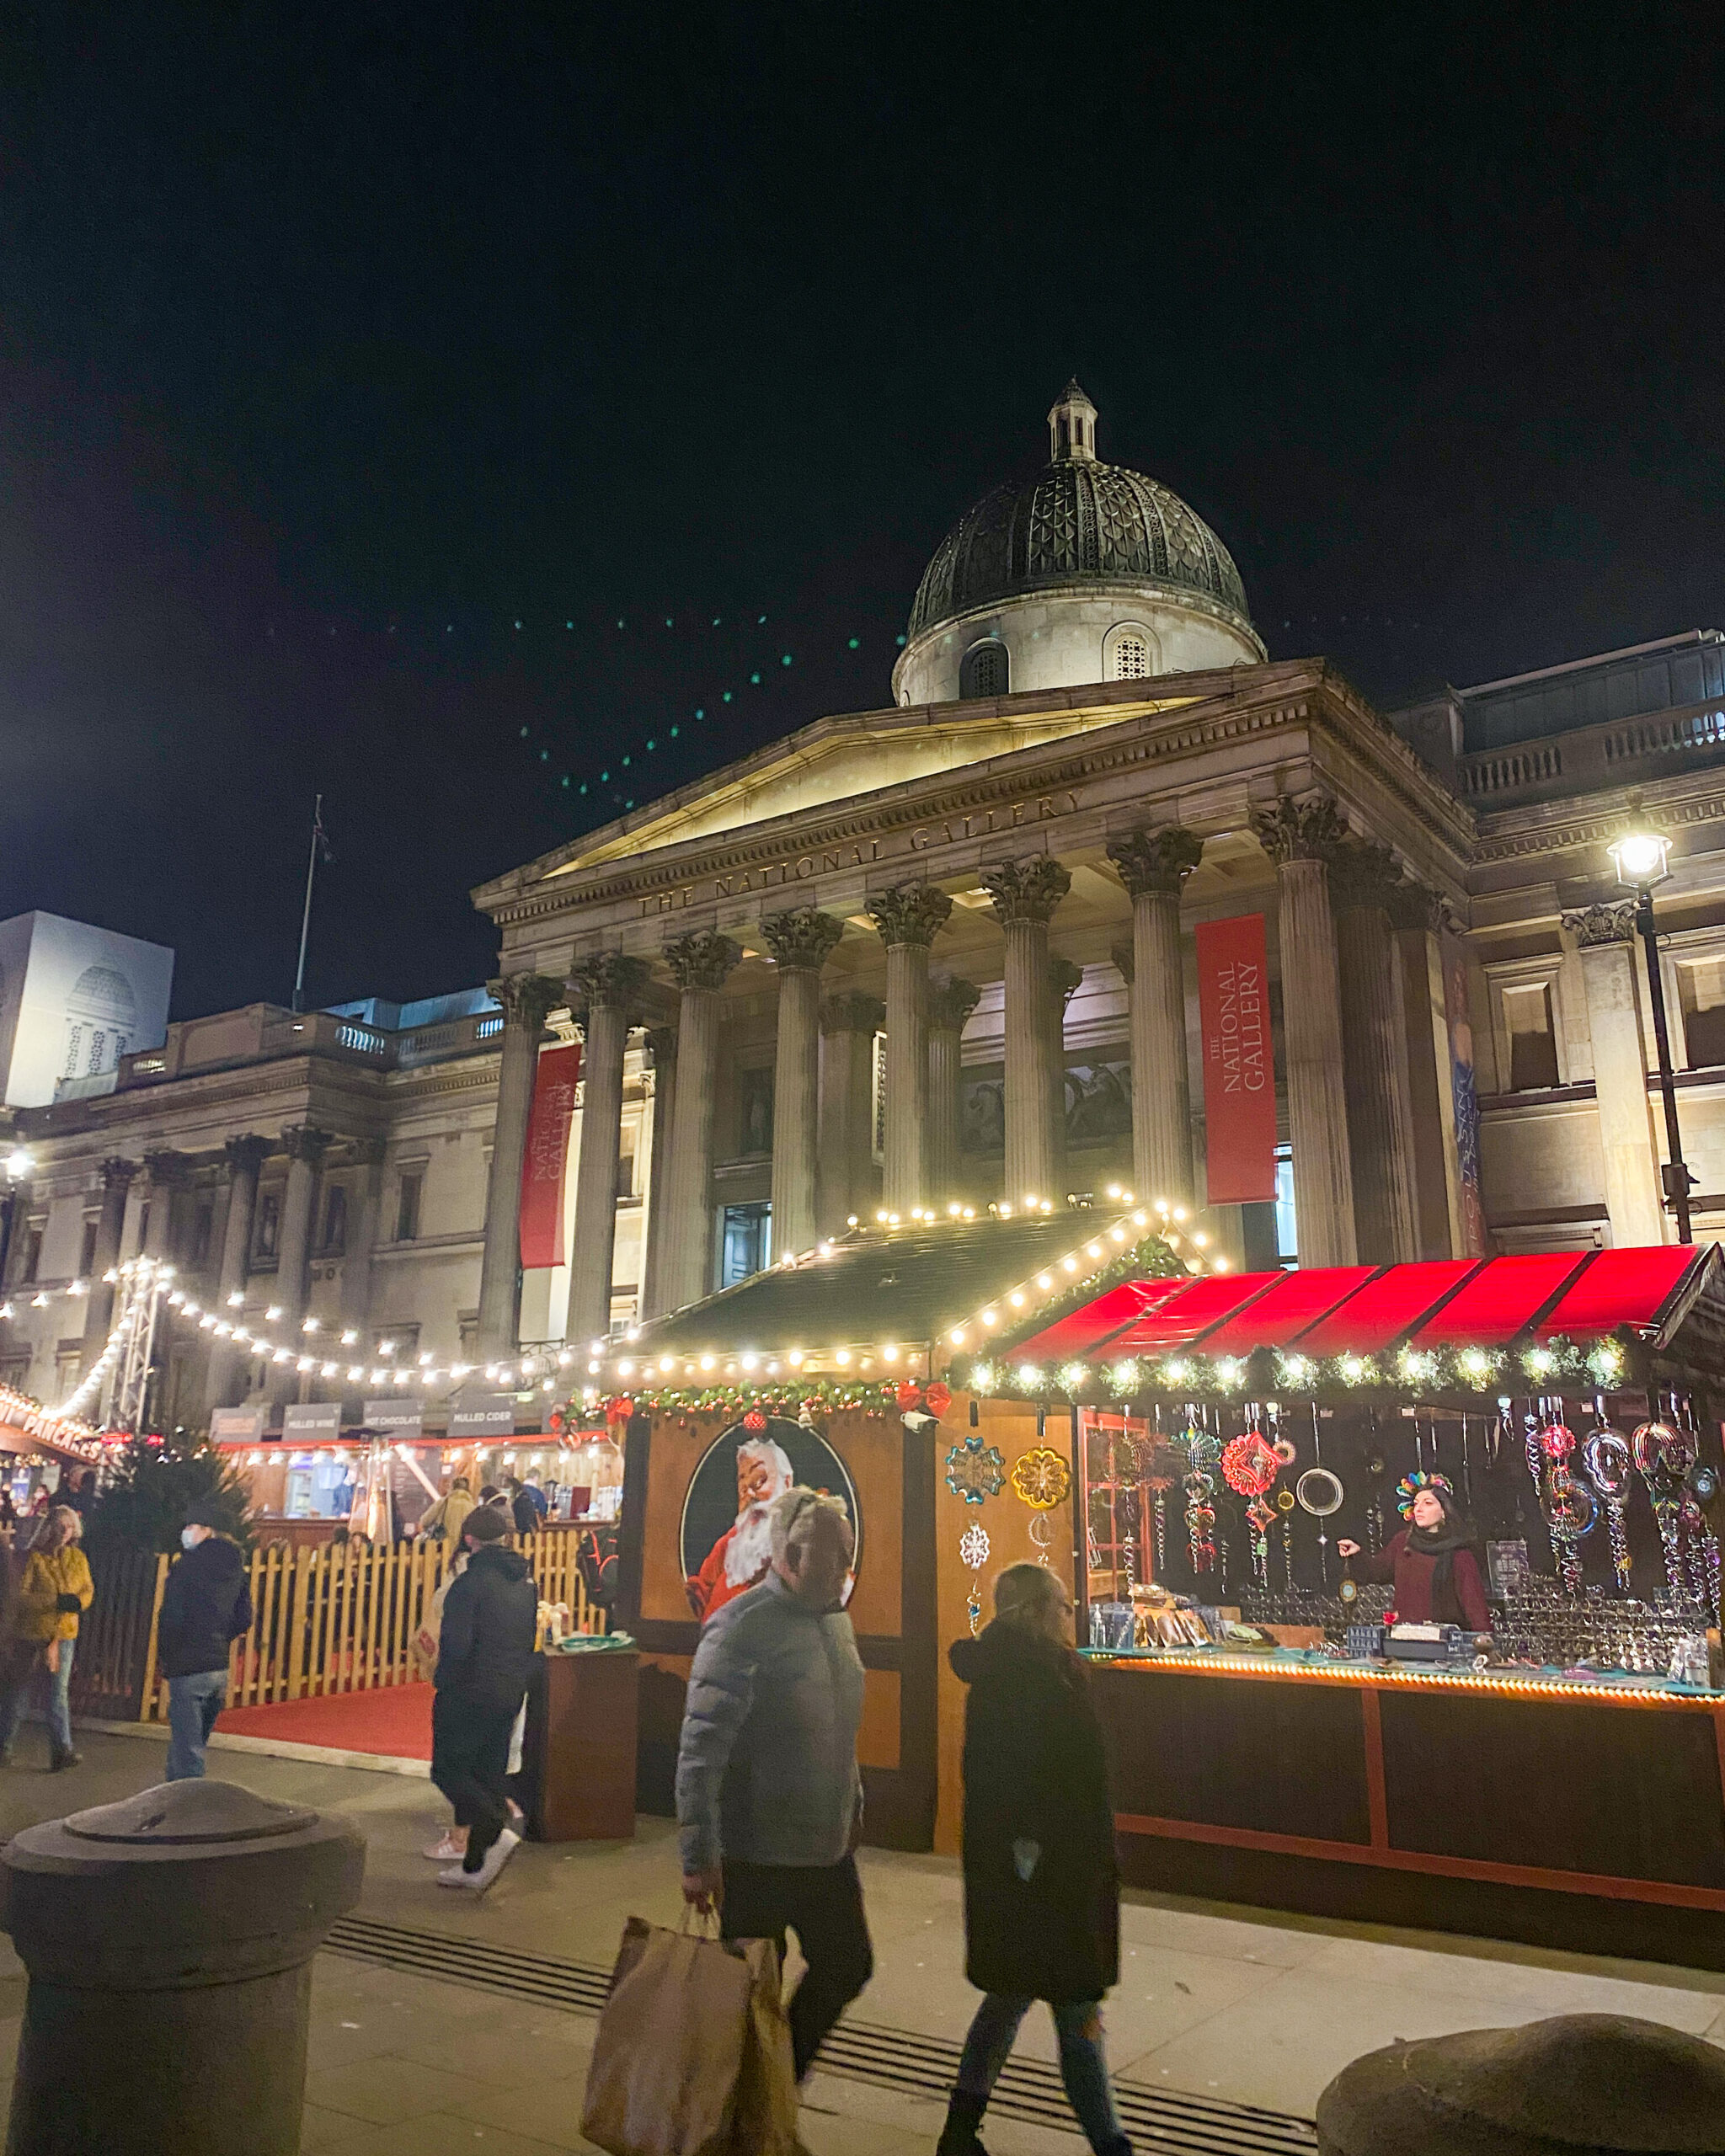 Trafalgar Square Christmas markets